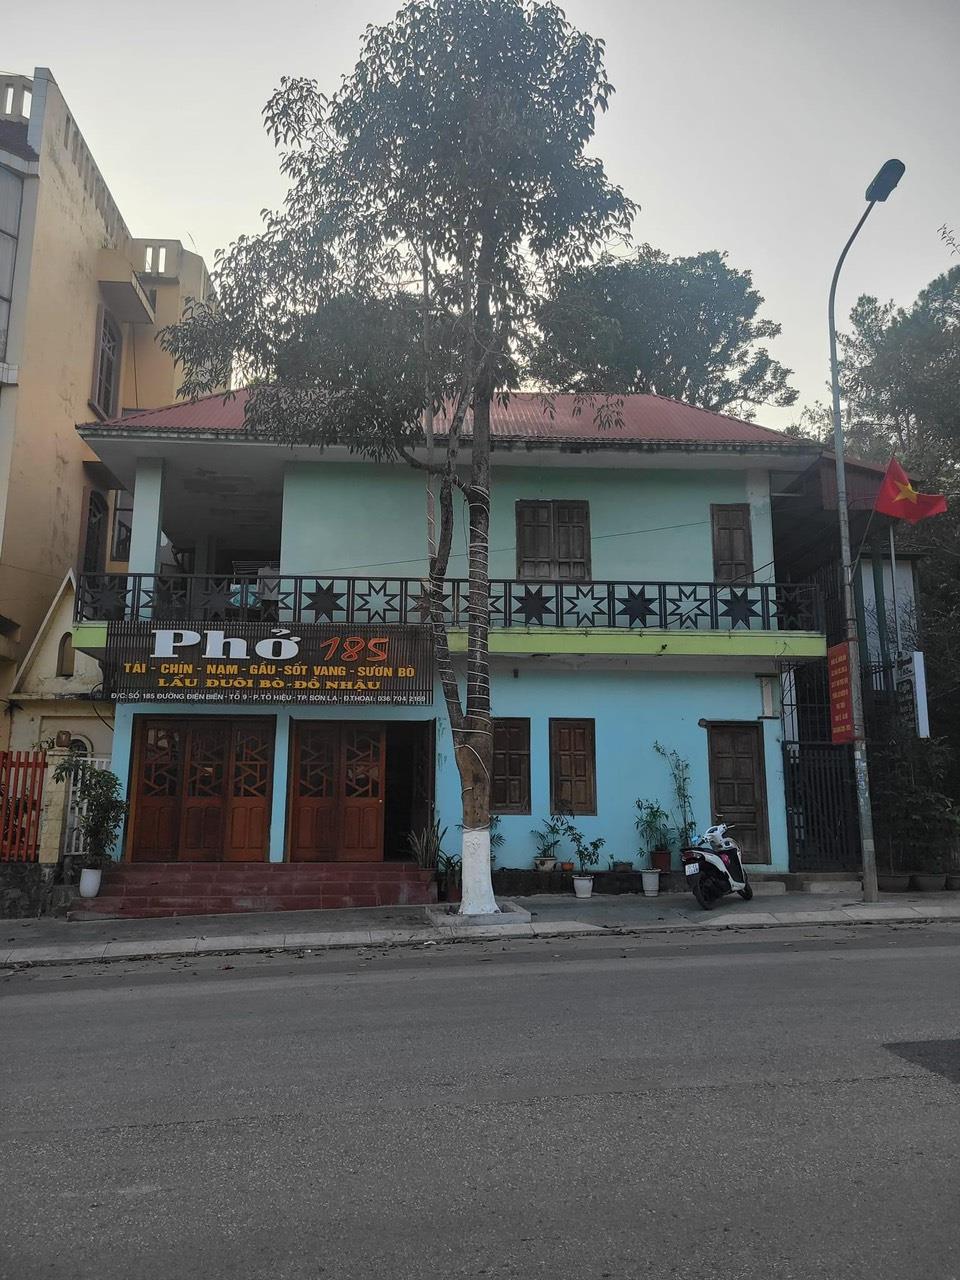 CHÍNH CHỦ CHO THUÊ LẠI QUÁN
Địa chỉ: Số nhà 185 đường Điện Biên, Thành Phố Sơn La.1185179